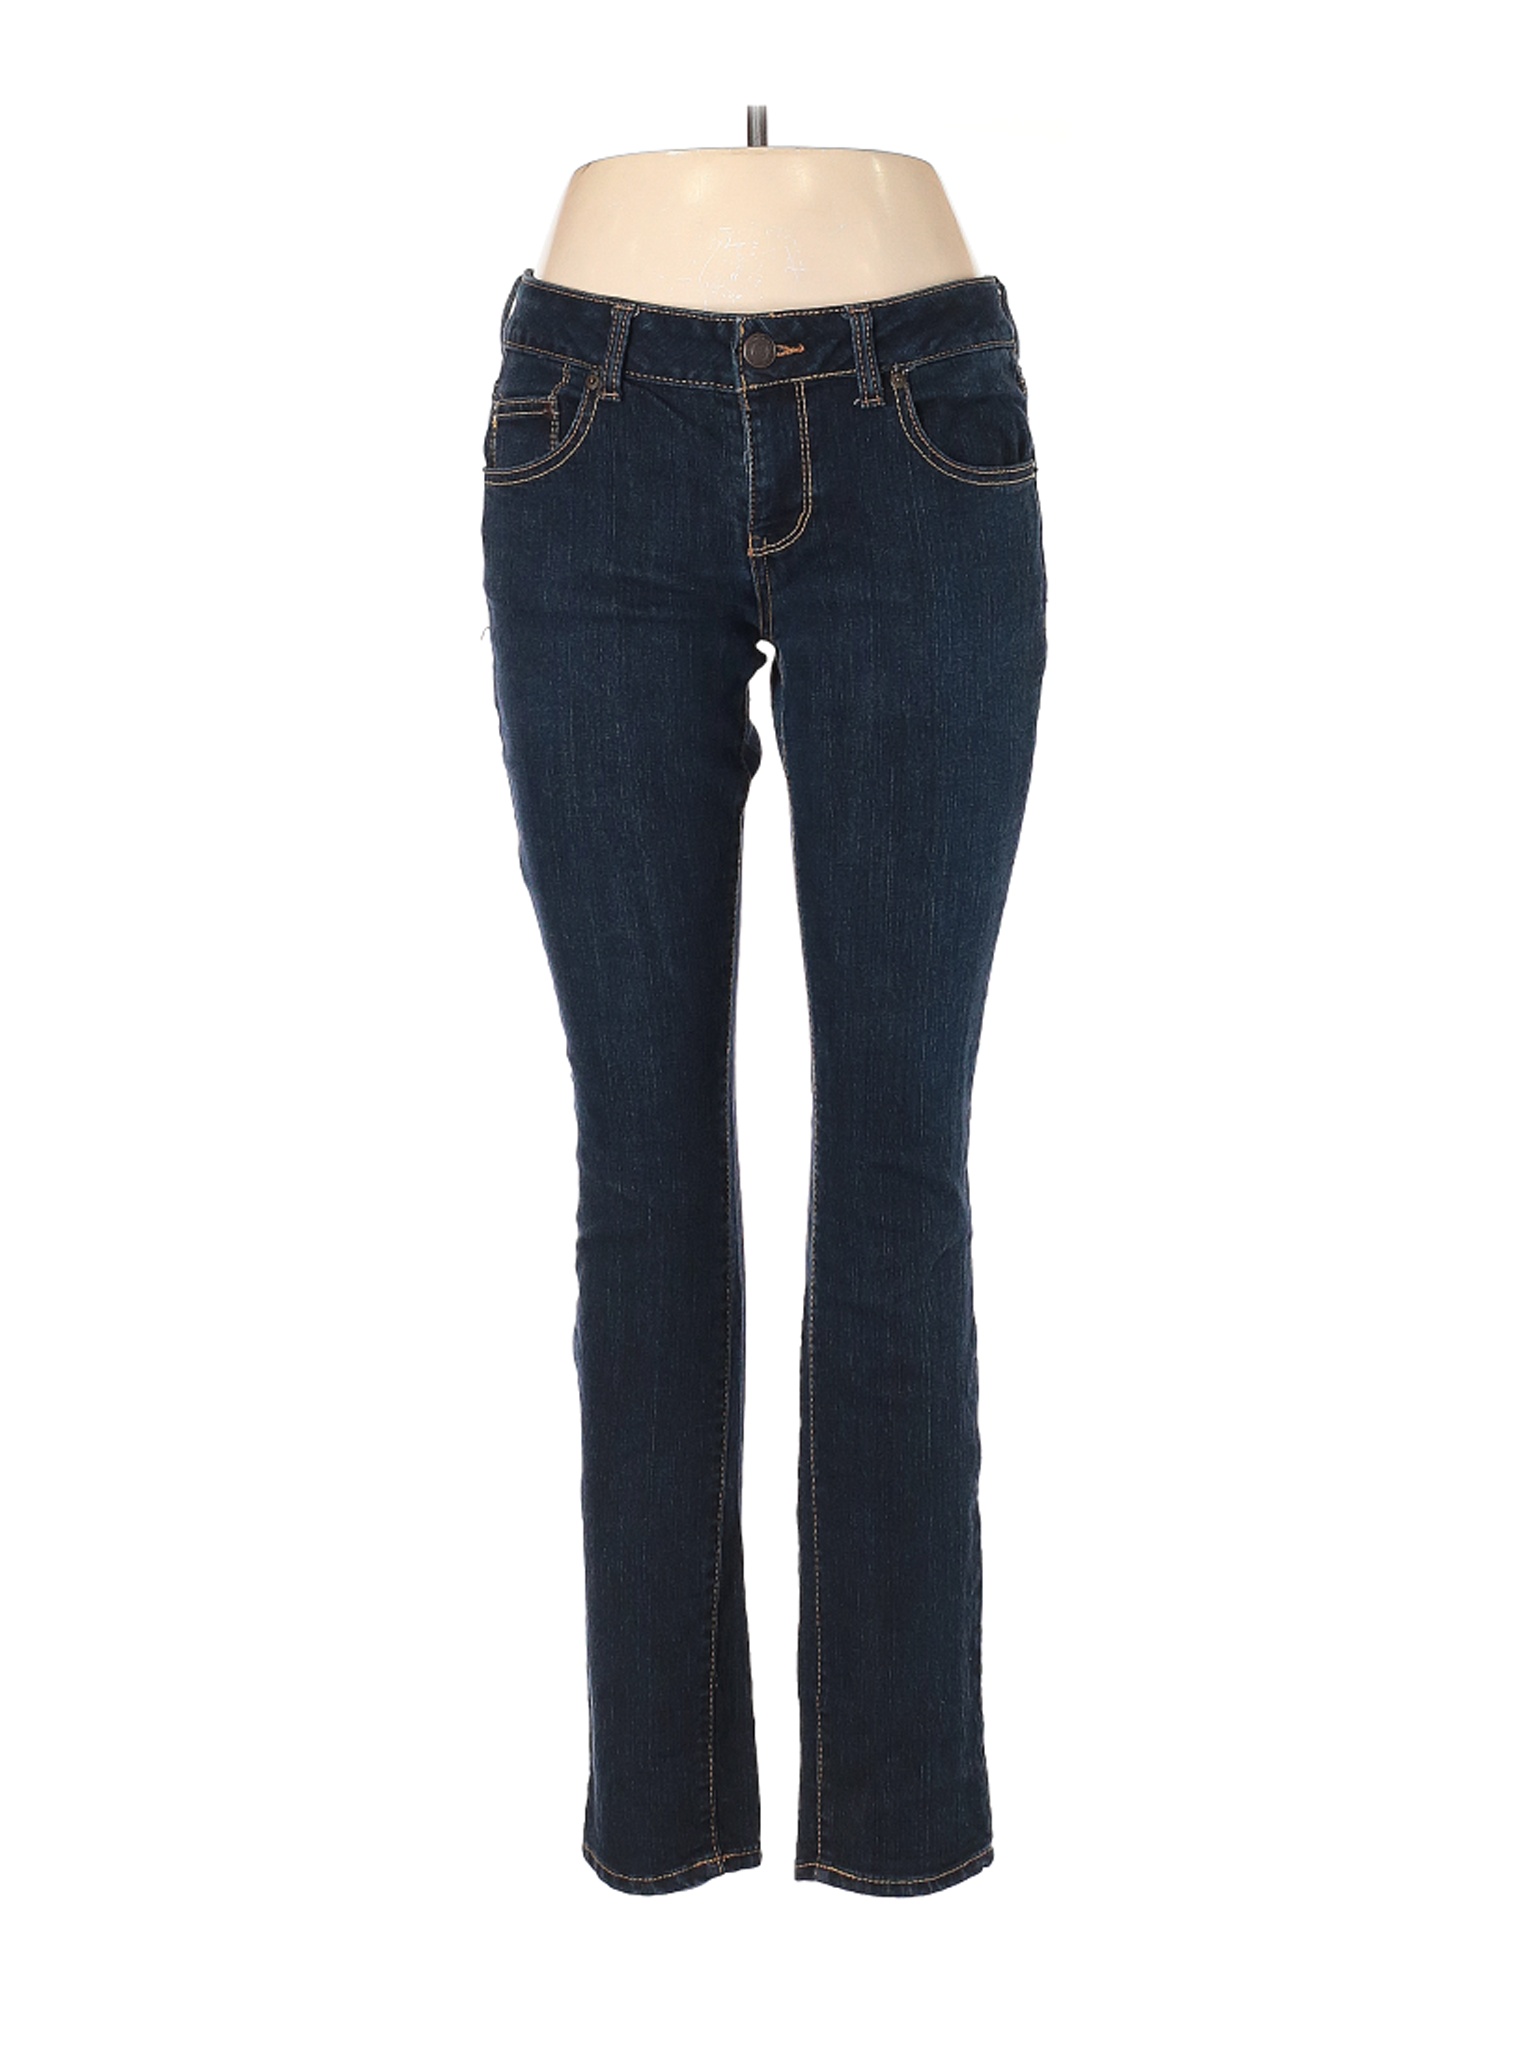 SO Women Blue Jeans 11 | eBay